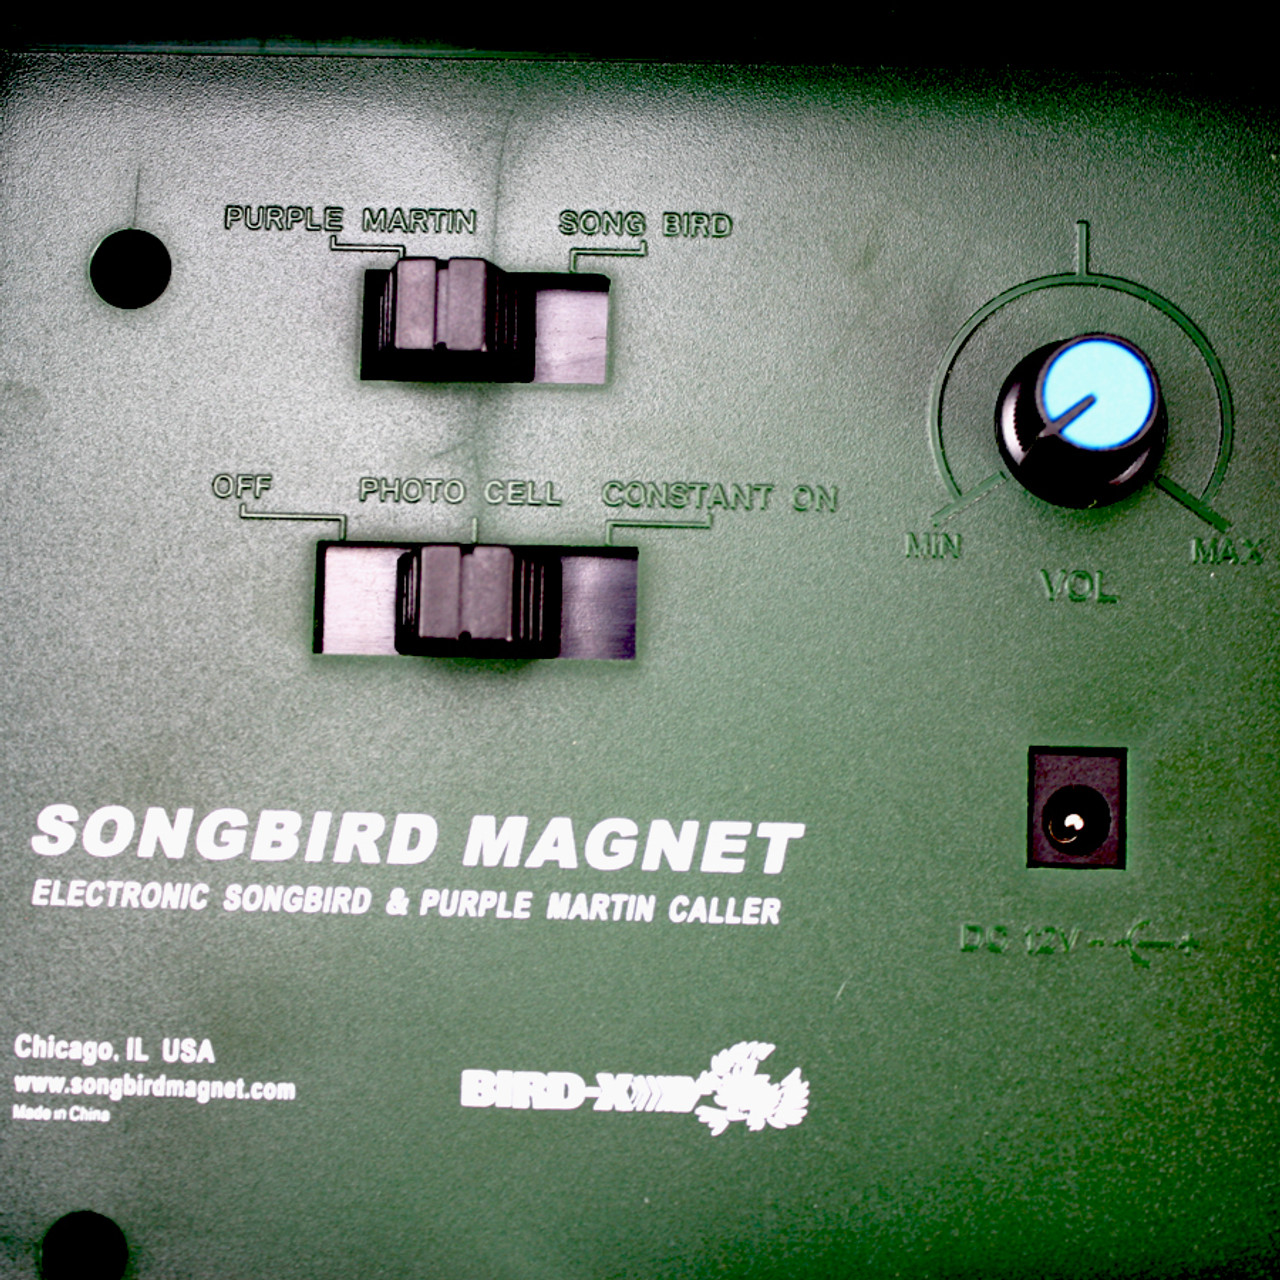 Songbird Magnet®